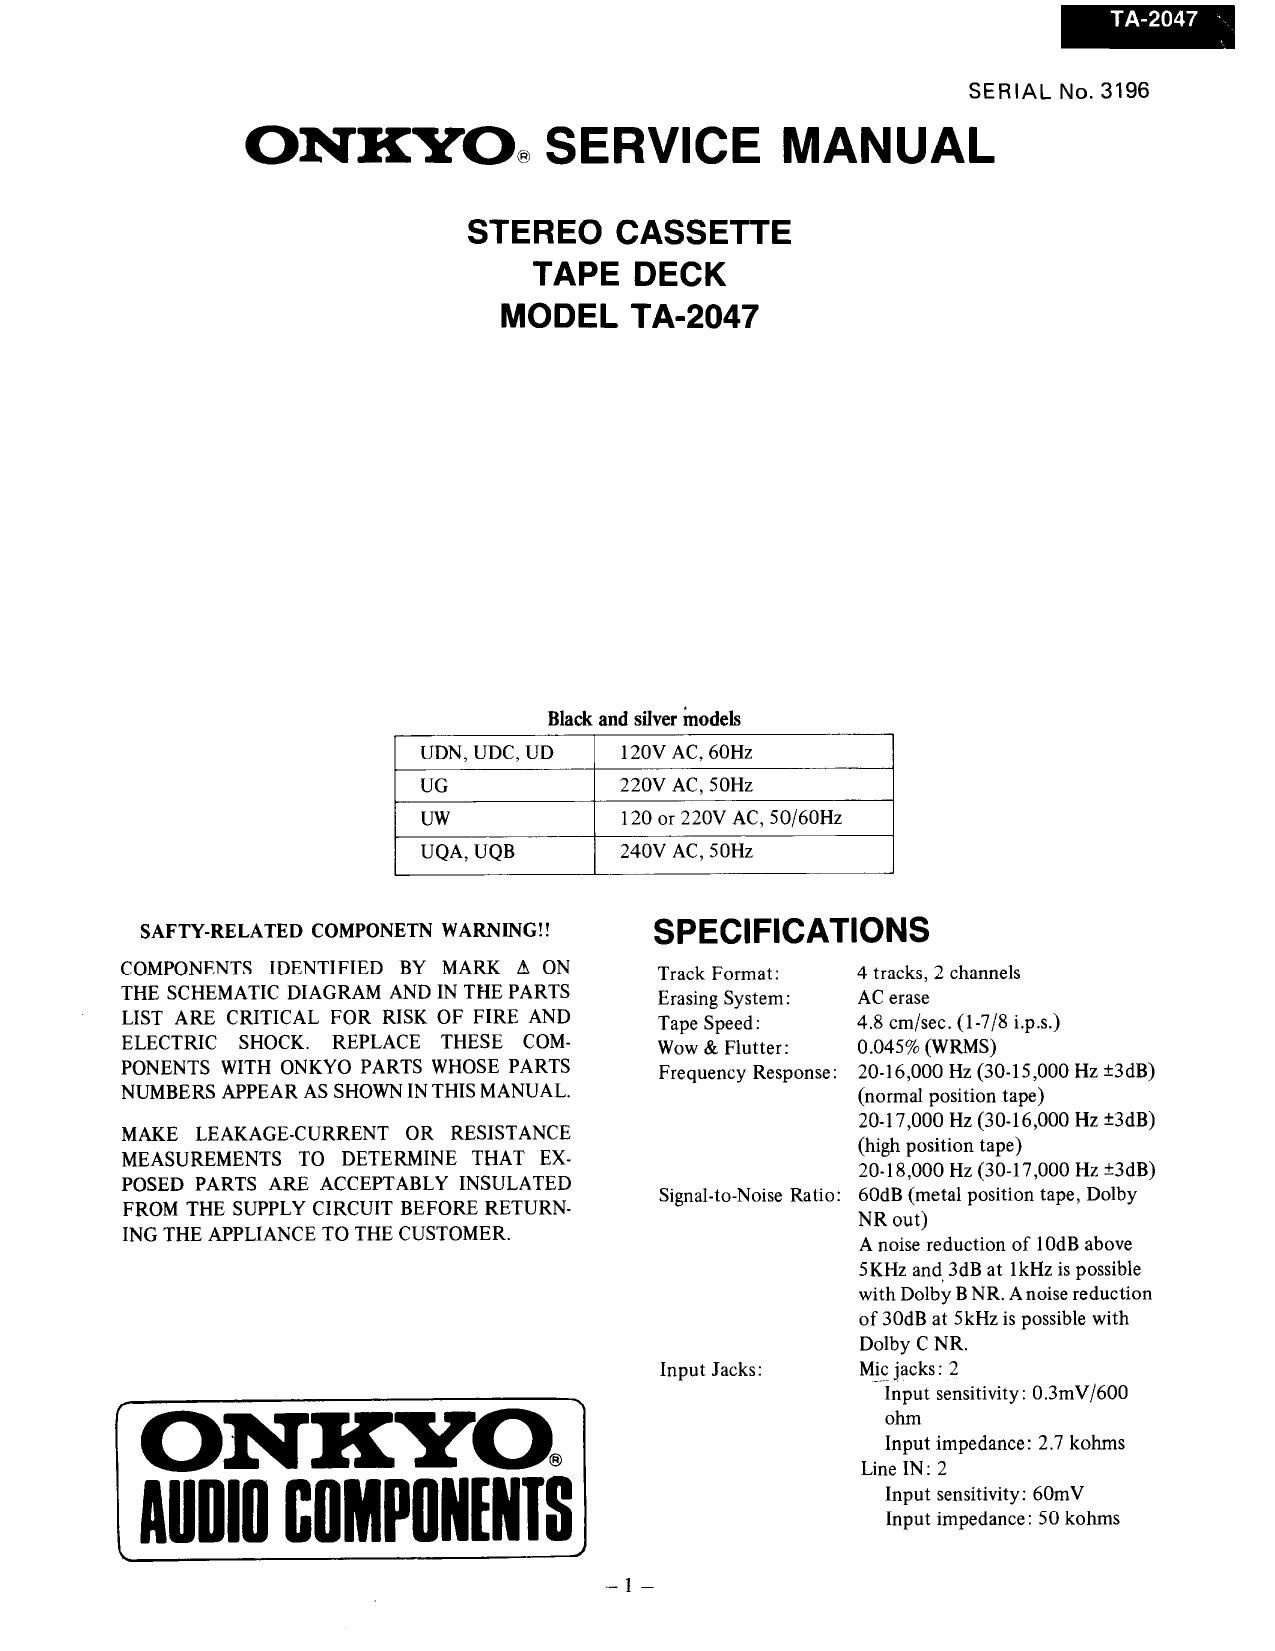 Onkyo TA 2047 Service Manual